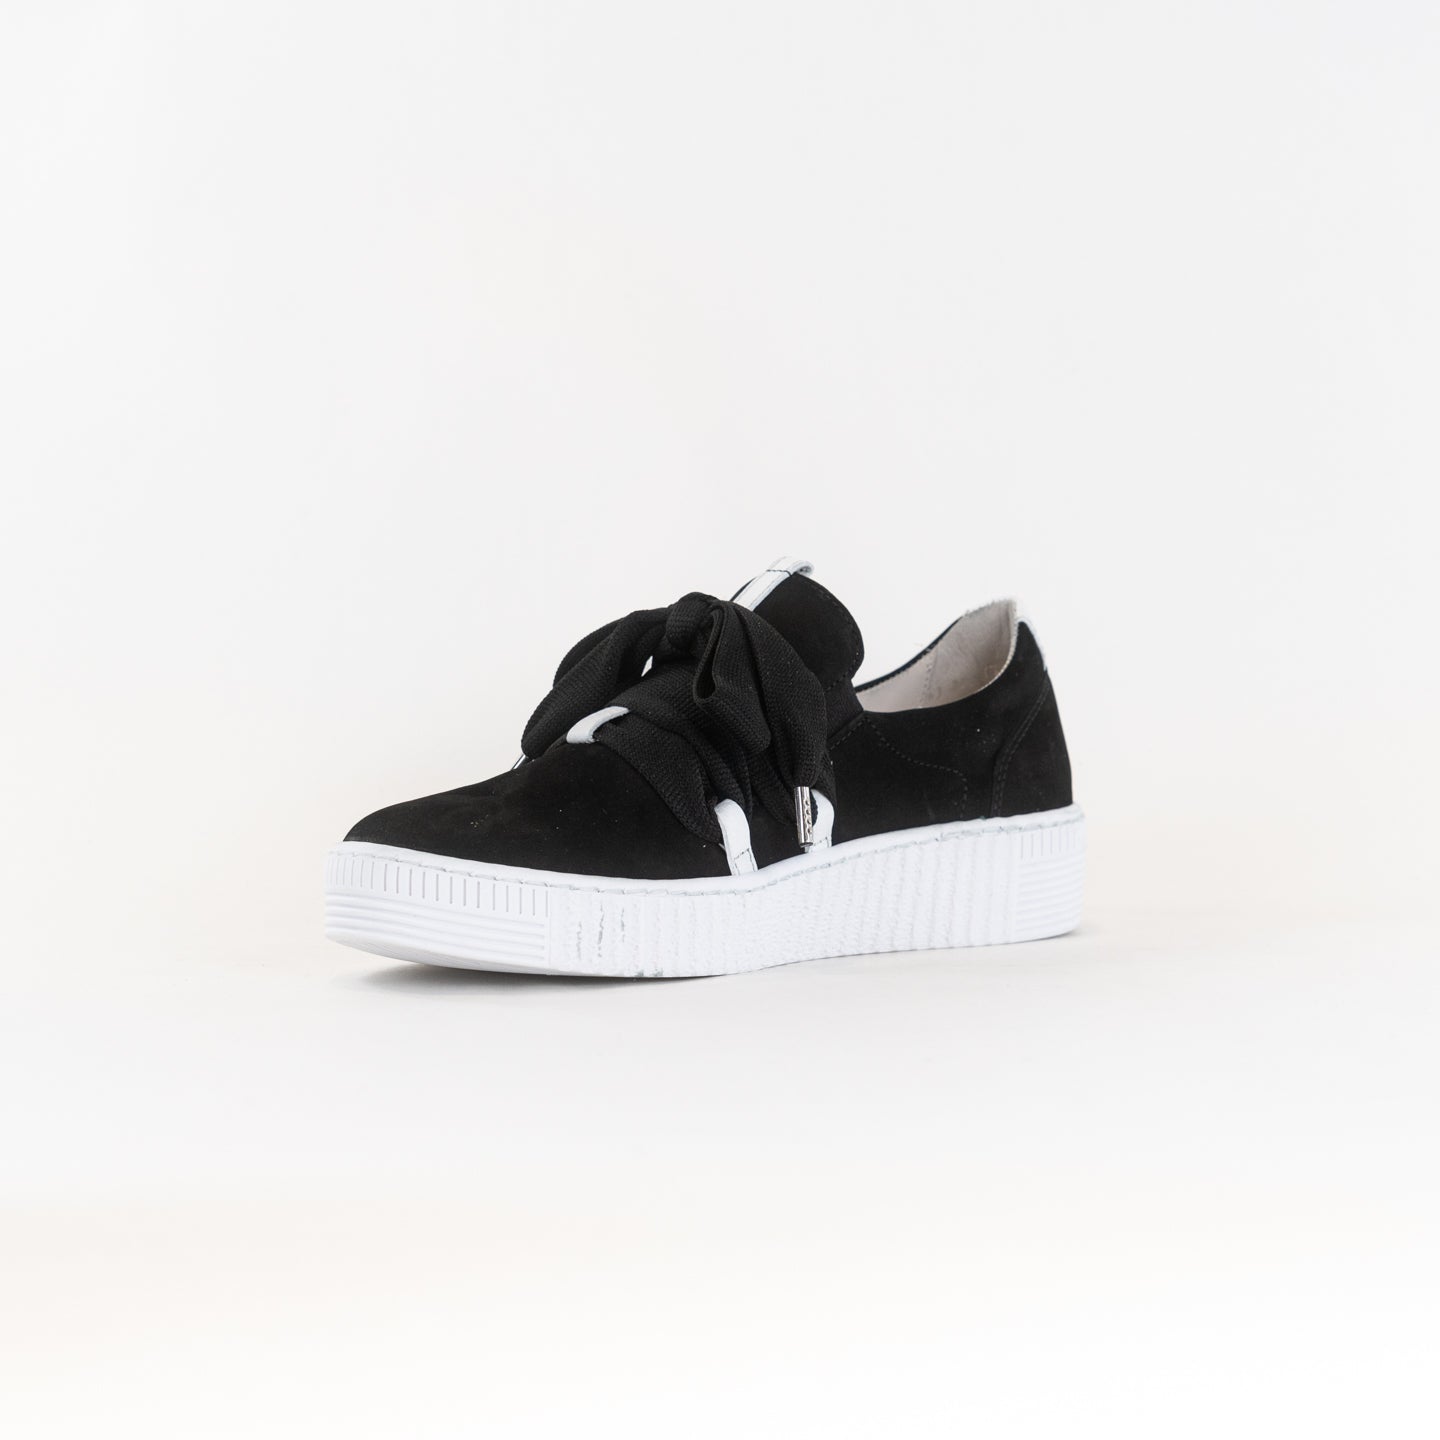 Gabor A1 Sneaker 333.17 (Women's) - Black/White